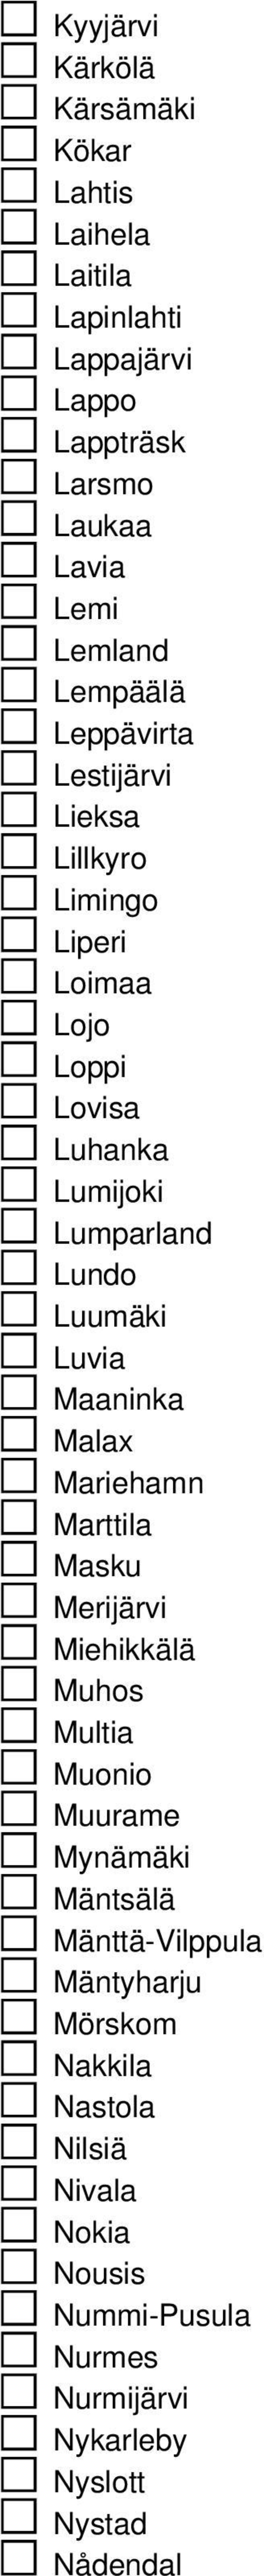 Luumäki Luvia Maaninka Malax Mariehamn Marttila Masku Merijärvi Miehikkälä Muhos Multia Muonio Muurame Mynämäki Mäntsälä